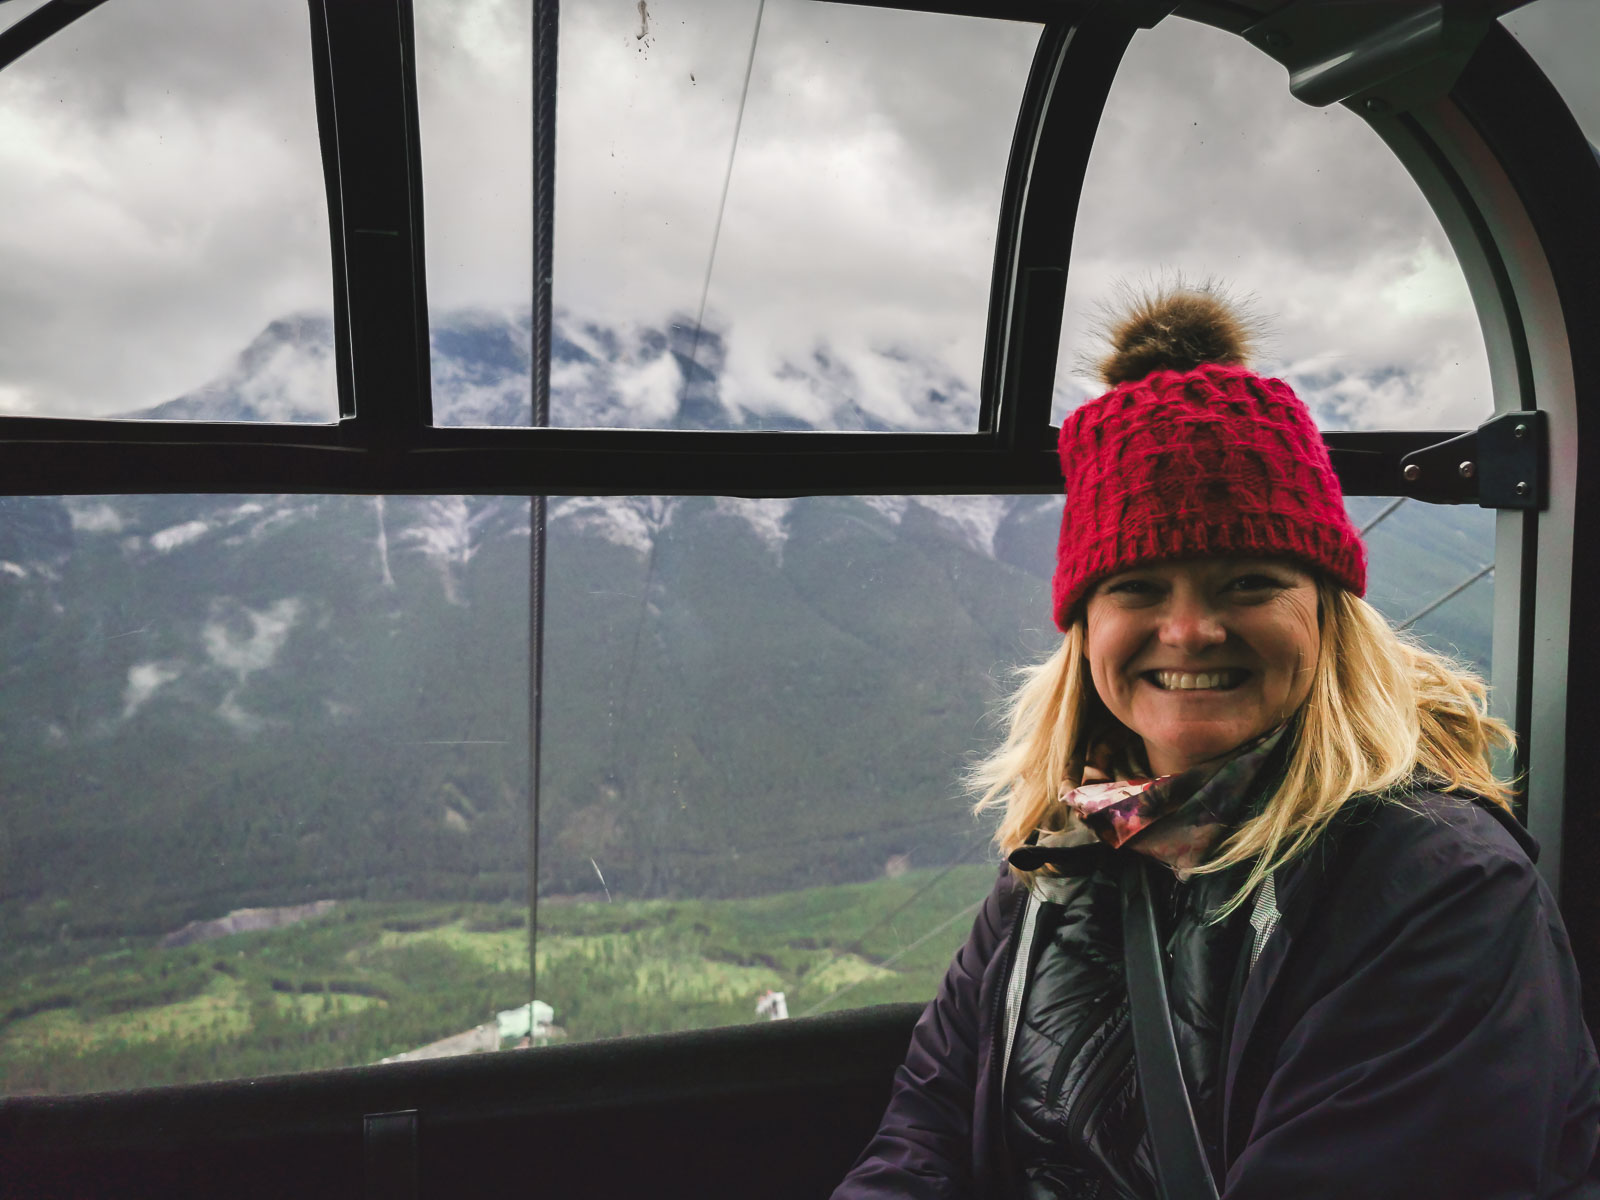 Take the Banff Gondola up to Sulphur Mountain